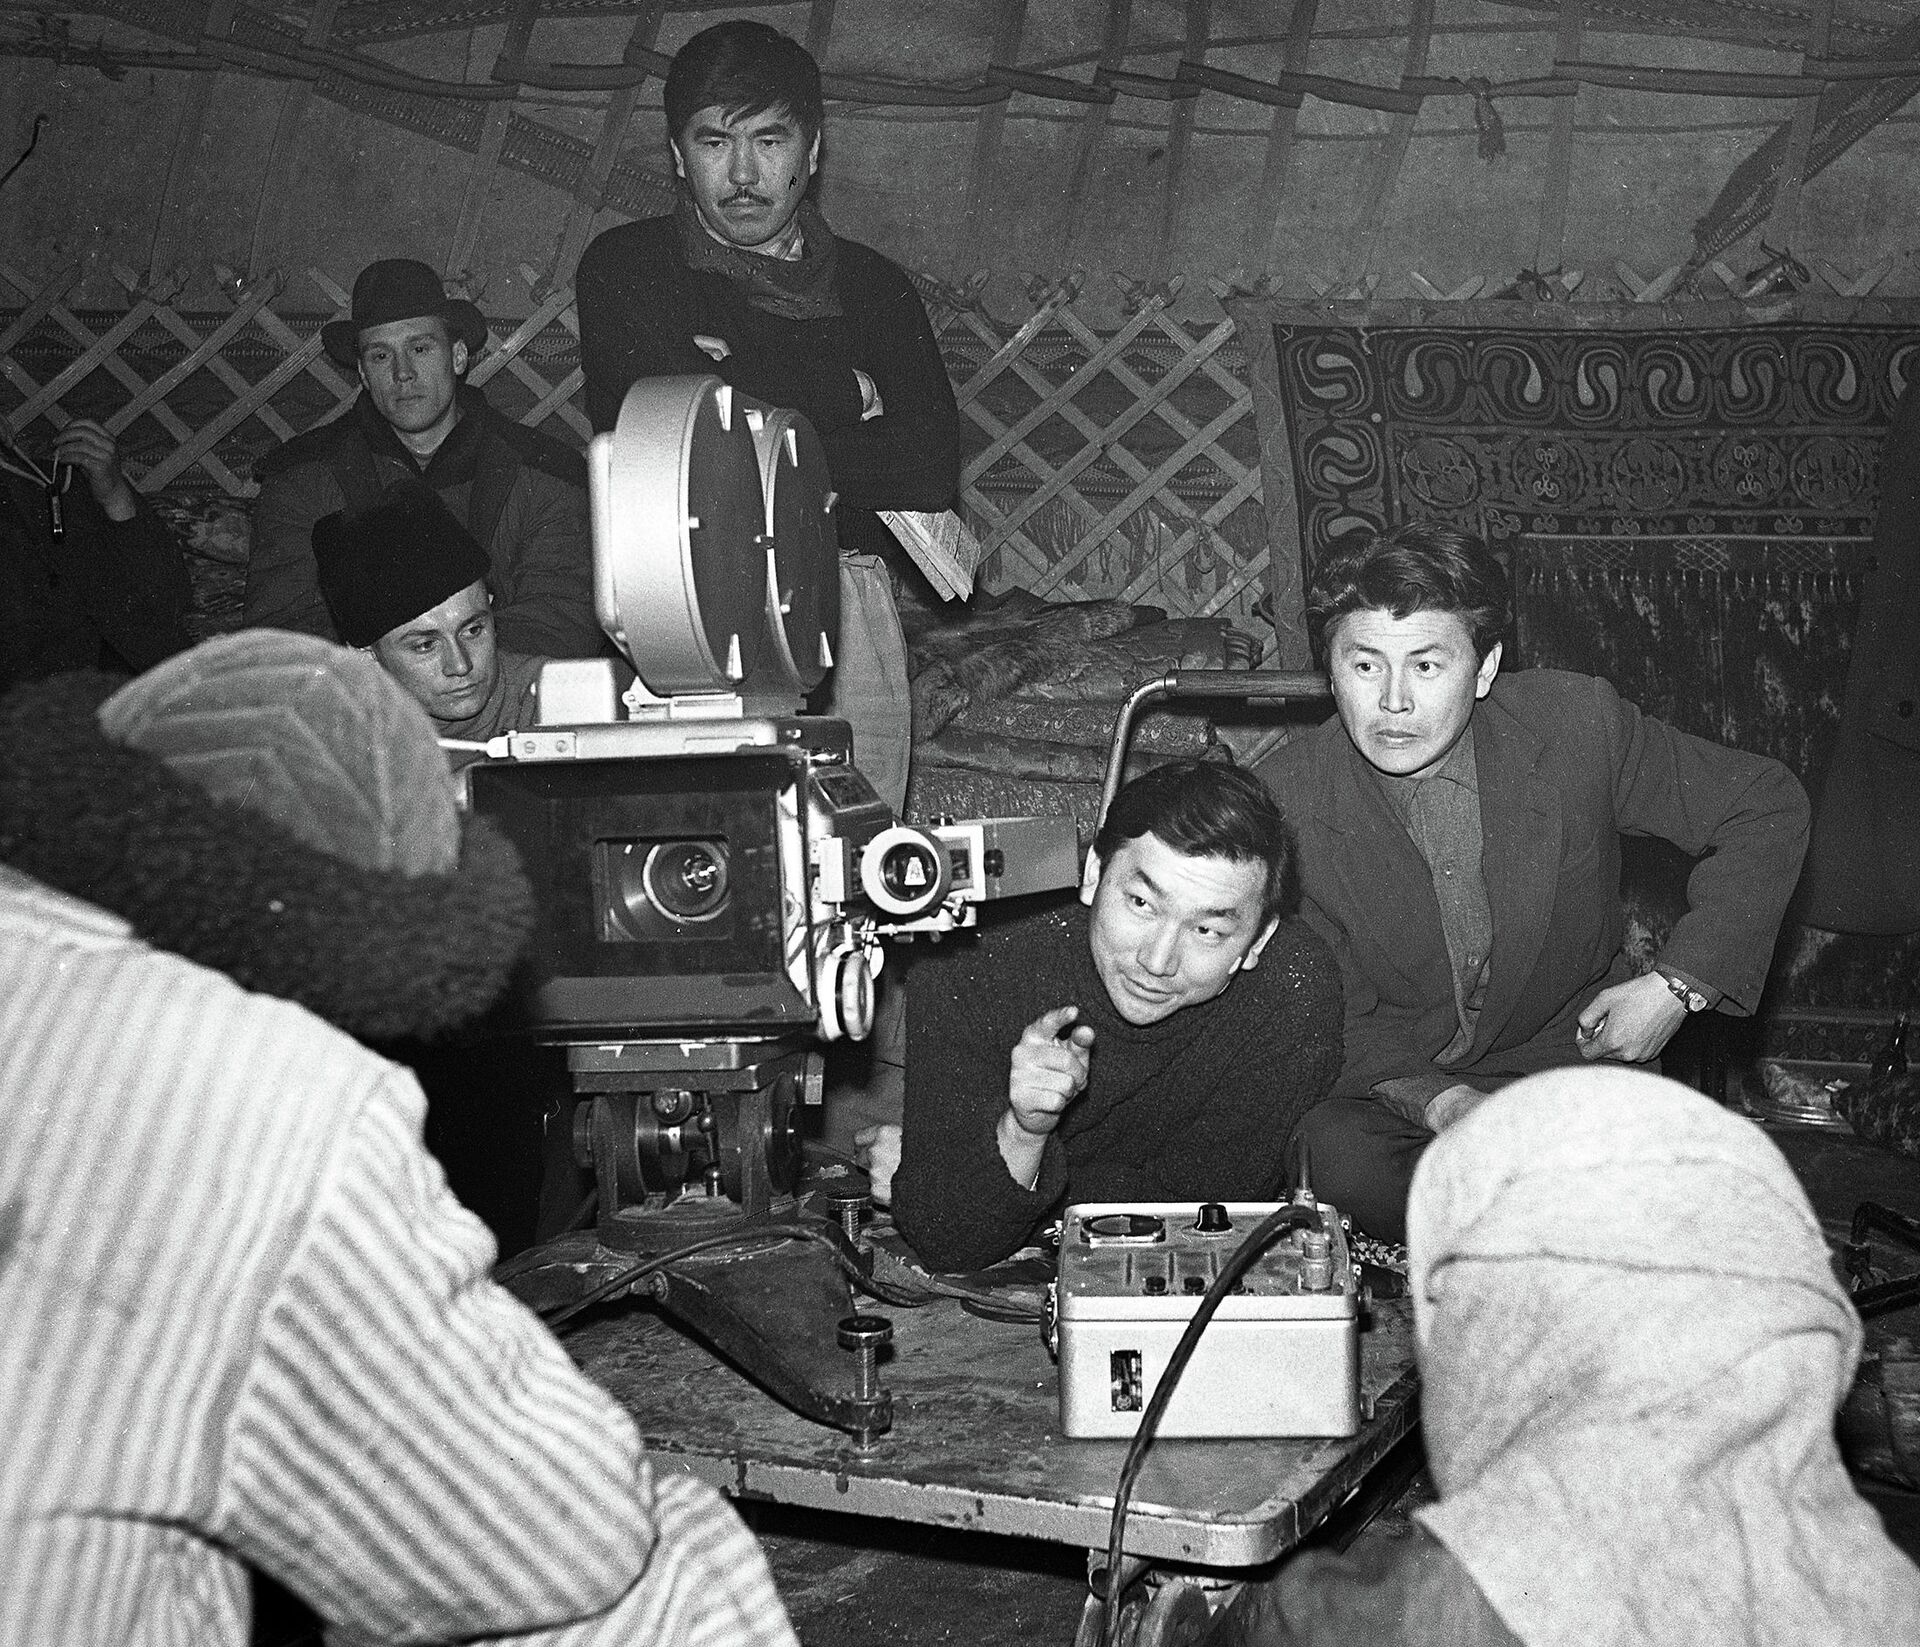 Фотография известных кыргызских режиссера Мелиса Убукеева (рядом с камерой) и кинооператора Кадыржана Кыдыралиева была снята в 1964 году в павильоне киностудии Кыргызтелефильм - Sputnik Кыргызстан, 1920, 06.11.2021